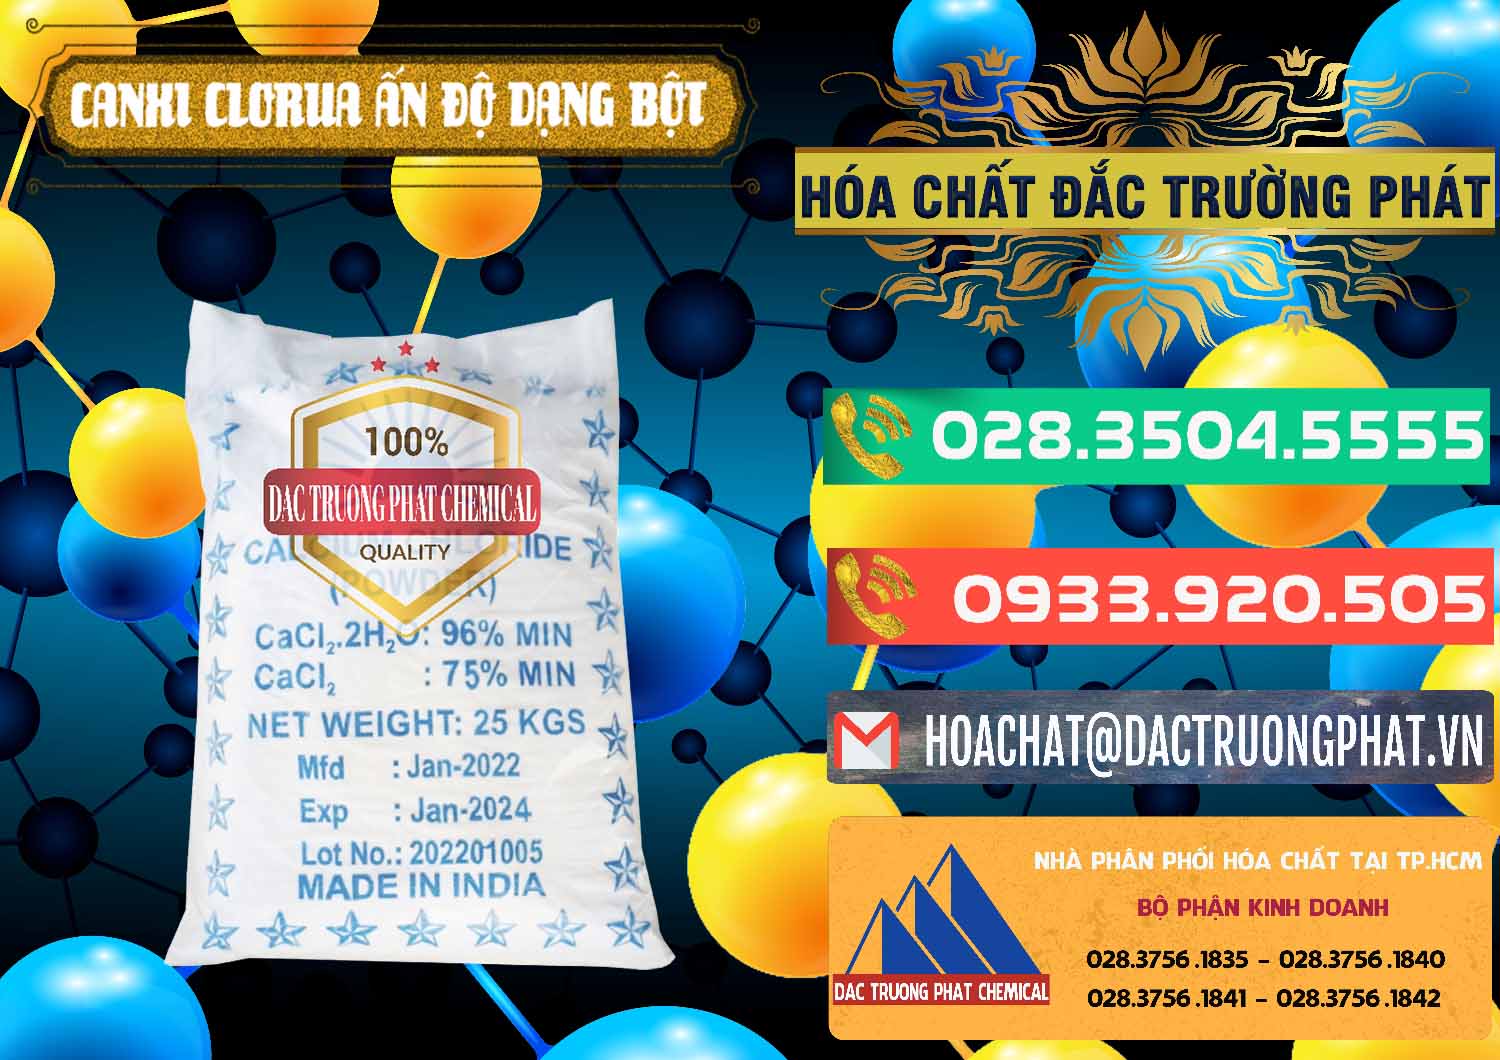 Công ty chuyên cung ứng - bán CaCl2 – Canxi Clorua 96% Dạng Bột Ấn Độ India - 0420 - Công ty chuyên cung cấp & bán hóa chất tại TP.HCM - congtyhoachat.com.vn